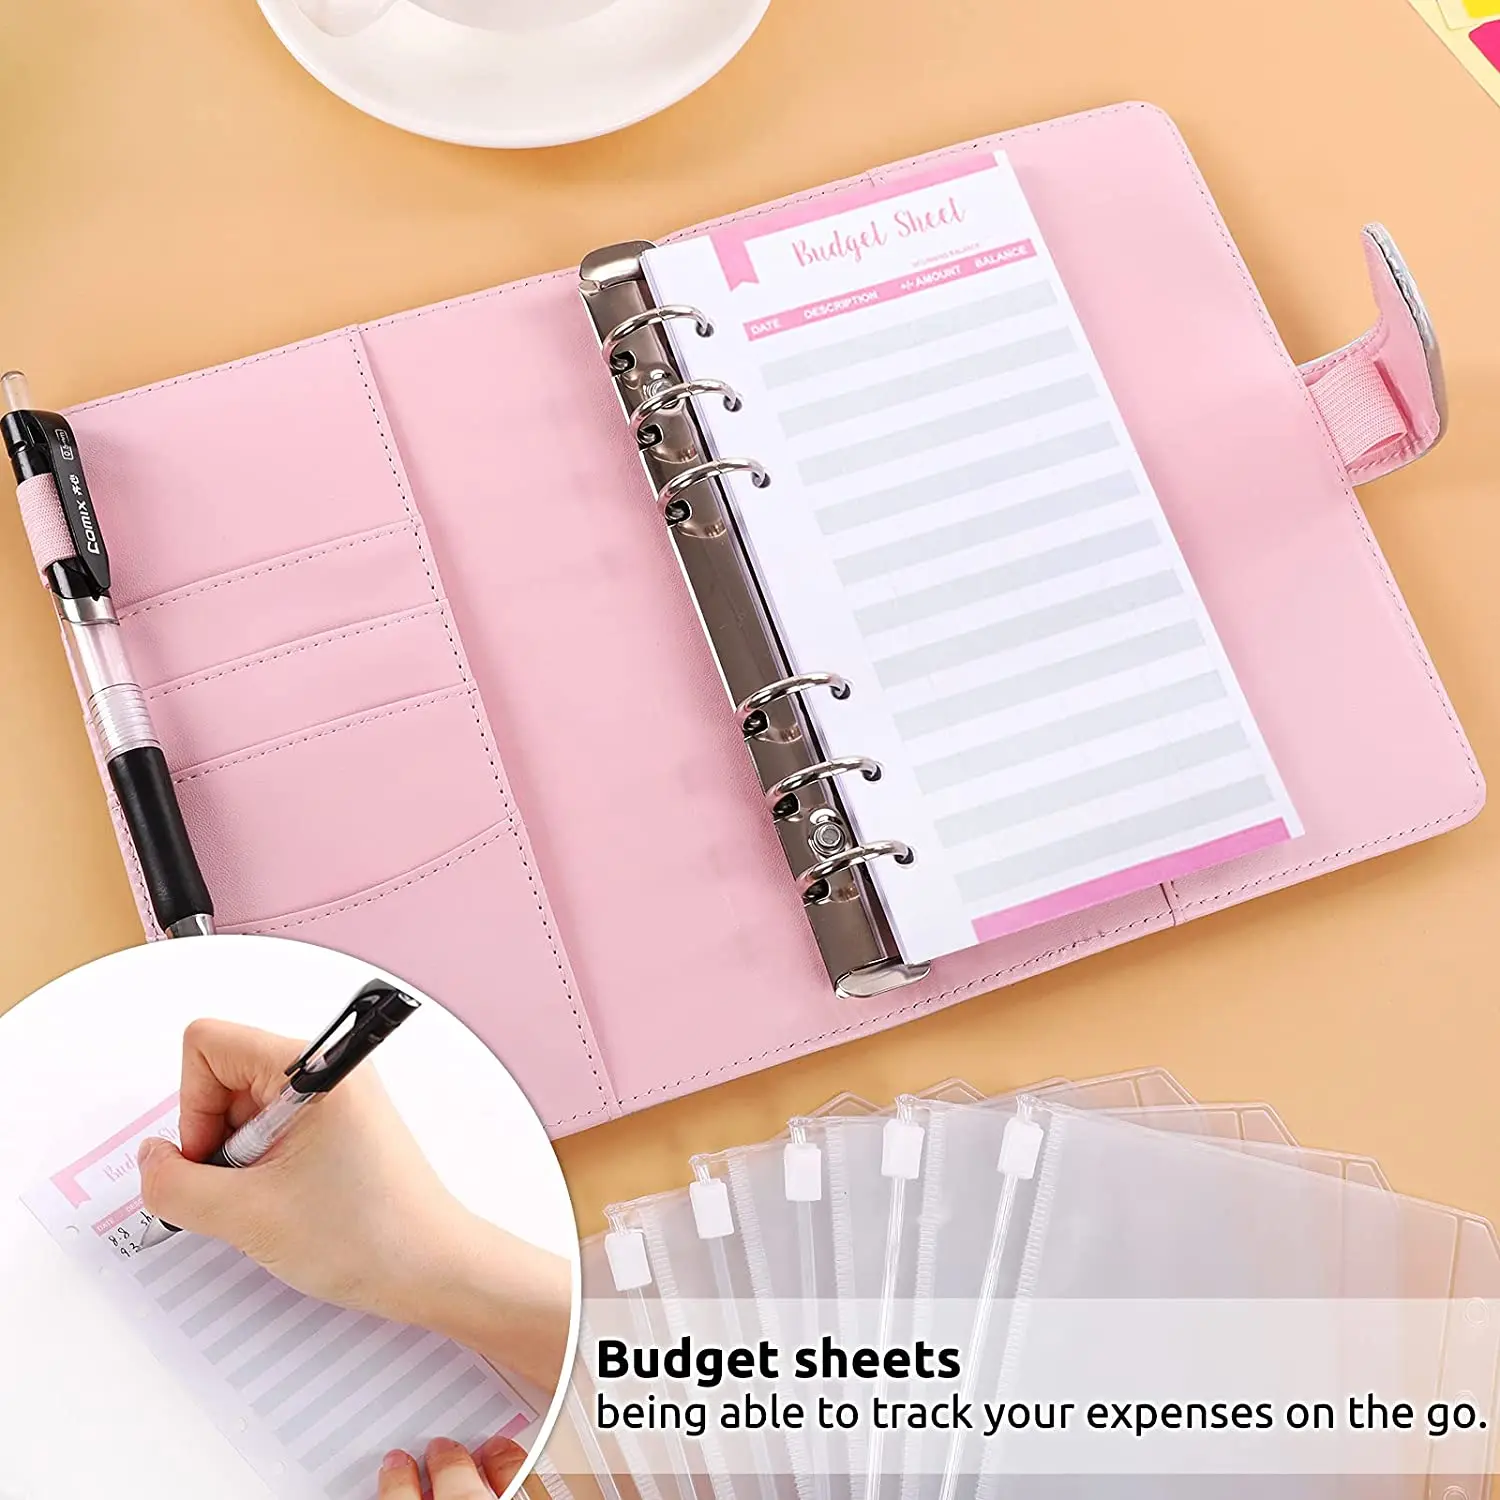 Dálnice a6 rozpočet pojivo noteboook s hotové peníze obálek systém, náklady rozpočet povlečení na postel, kategorie nálepky, pro budgeting a šetření devizy